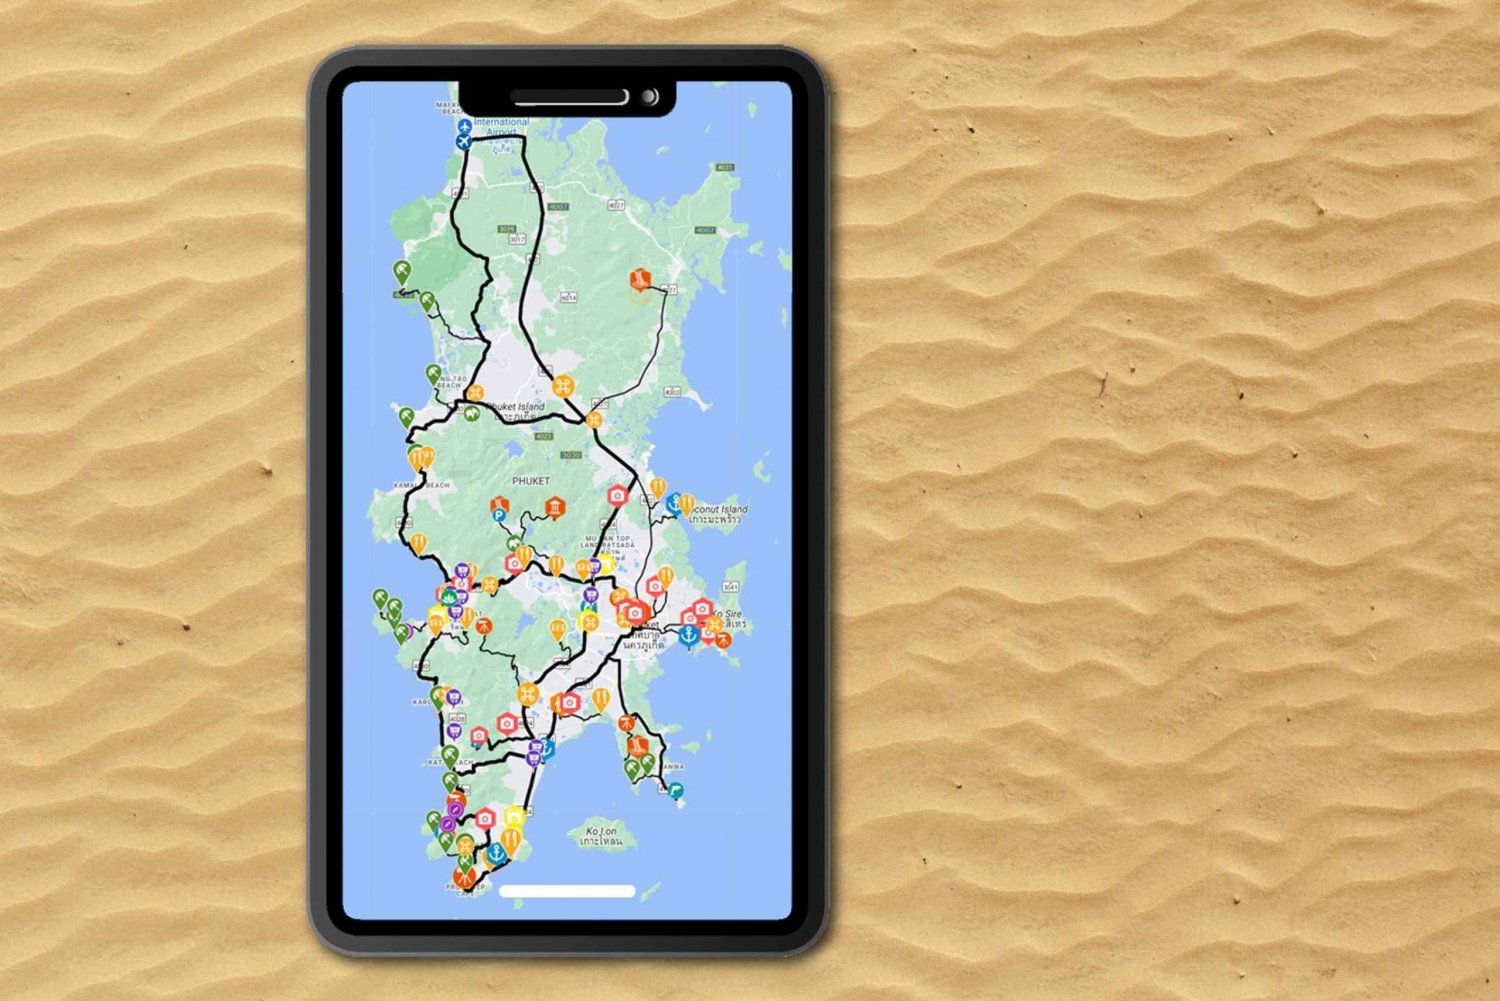 Phuket: Guide til udforskning af øen: App med offline indhold